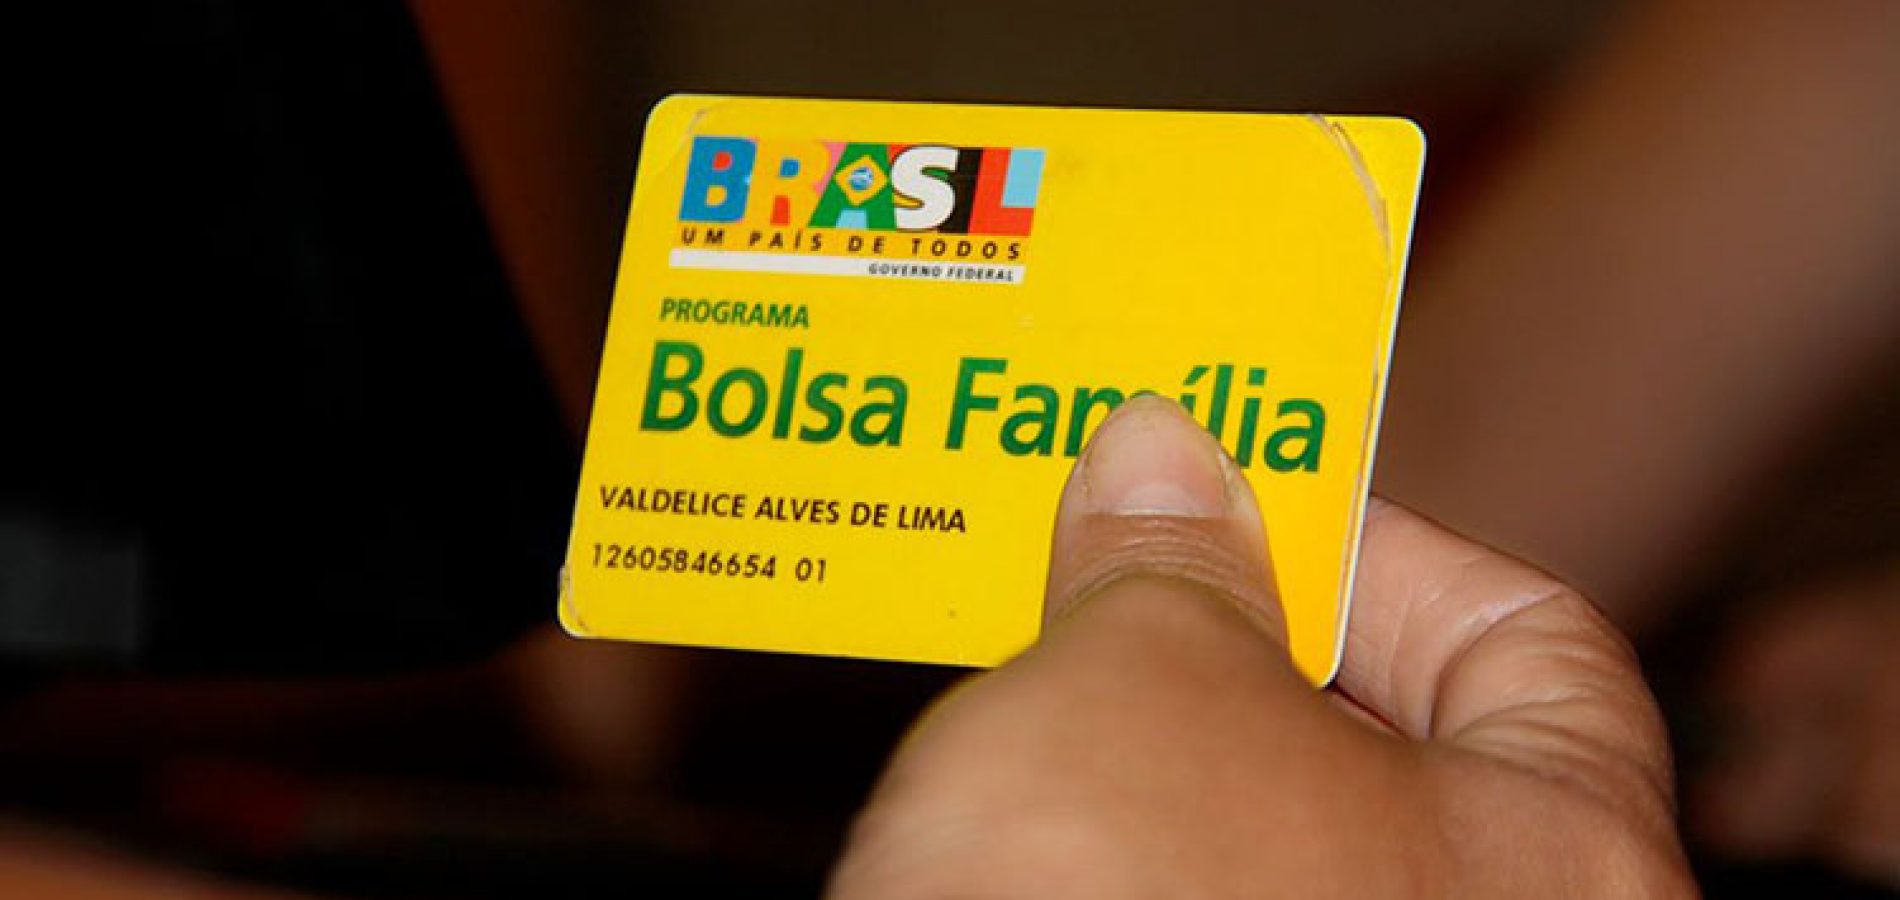 Piauí tem o 2º maior percentual de famílias que recebem Bolsa Família, aponta IBGE